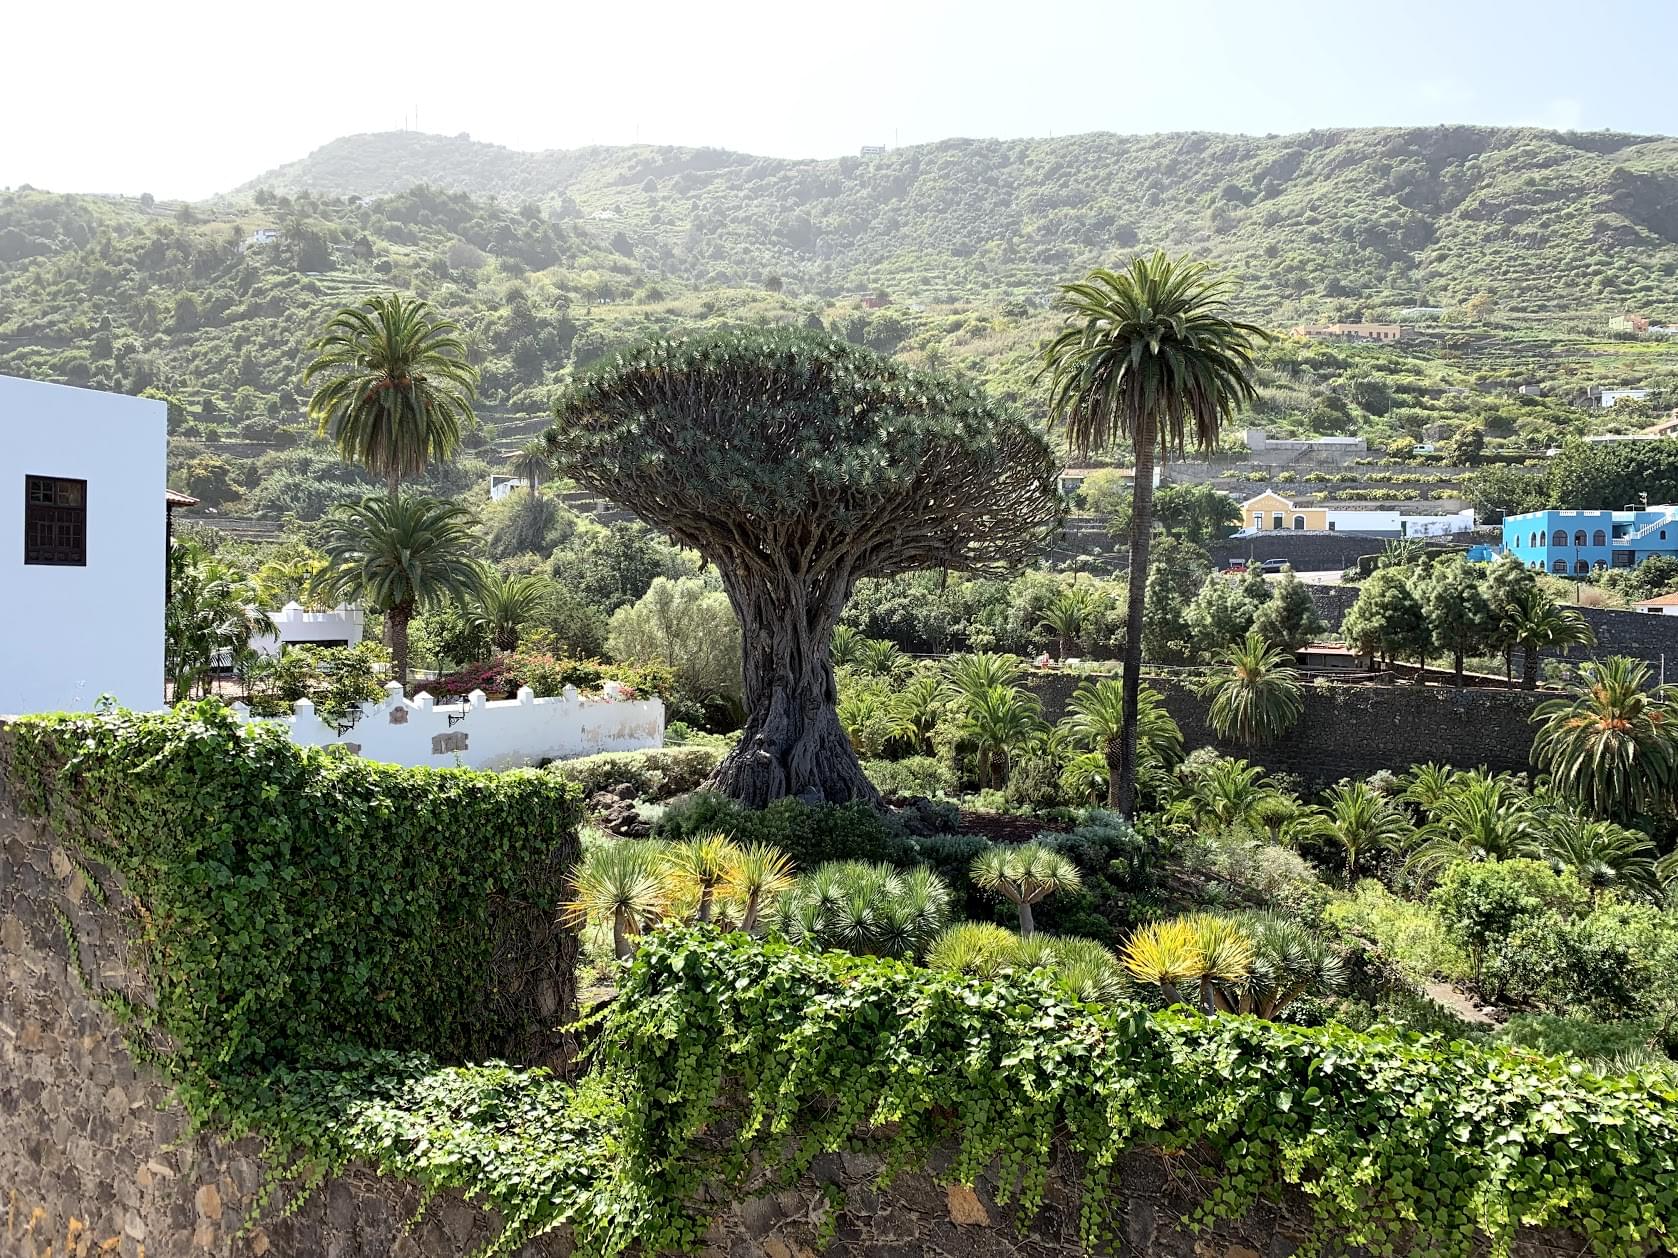 Besuch des Drago Milenario: Einer der ältesten Drachenbäume der Welt